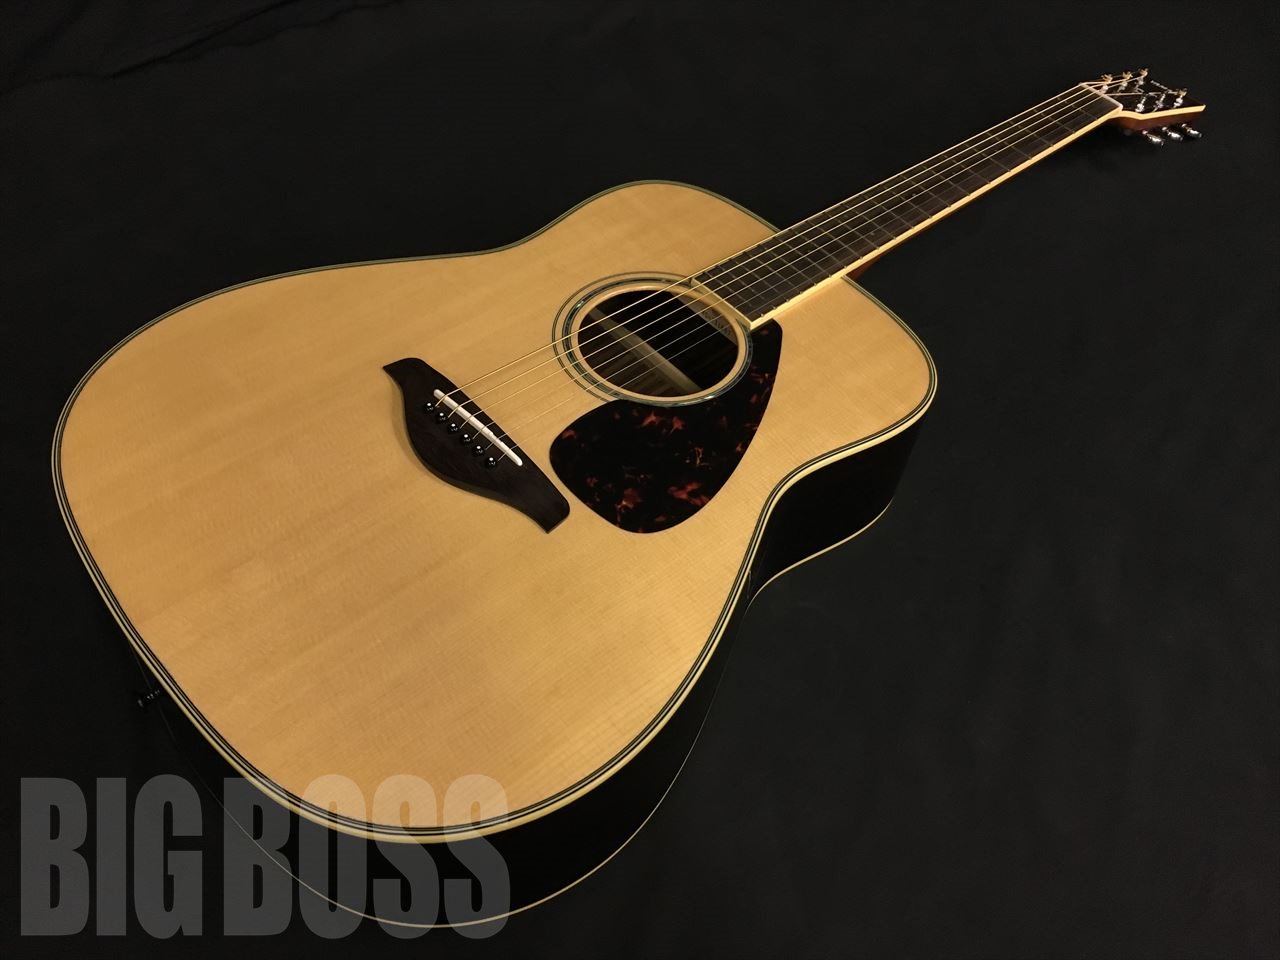 YAMAHA FG830 アコースティックギター-